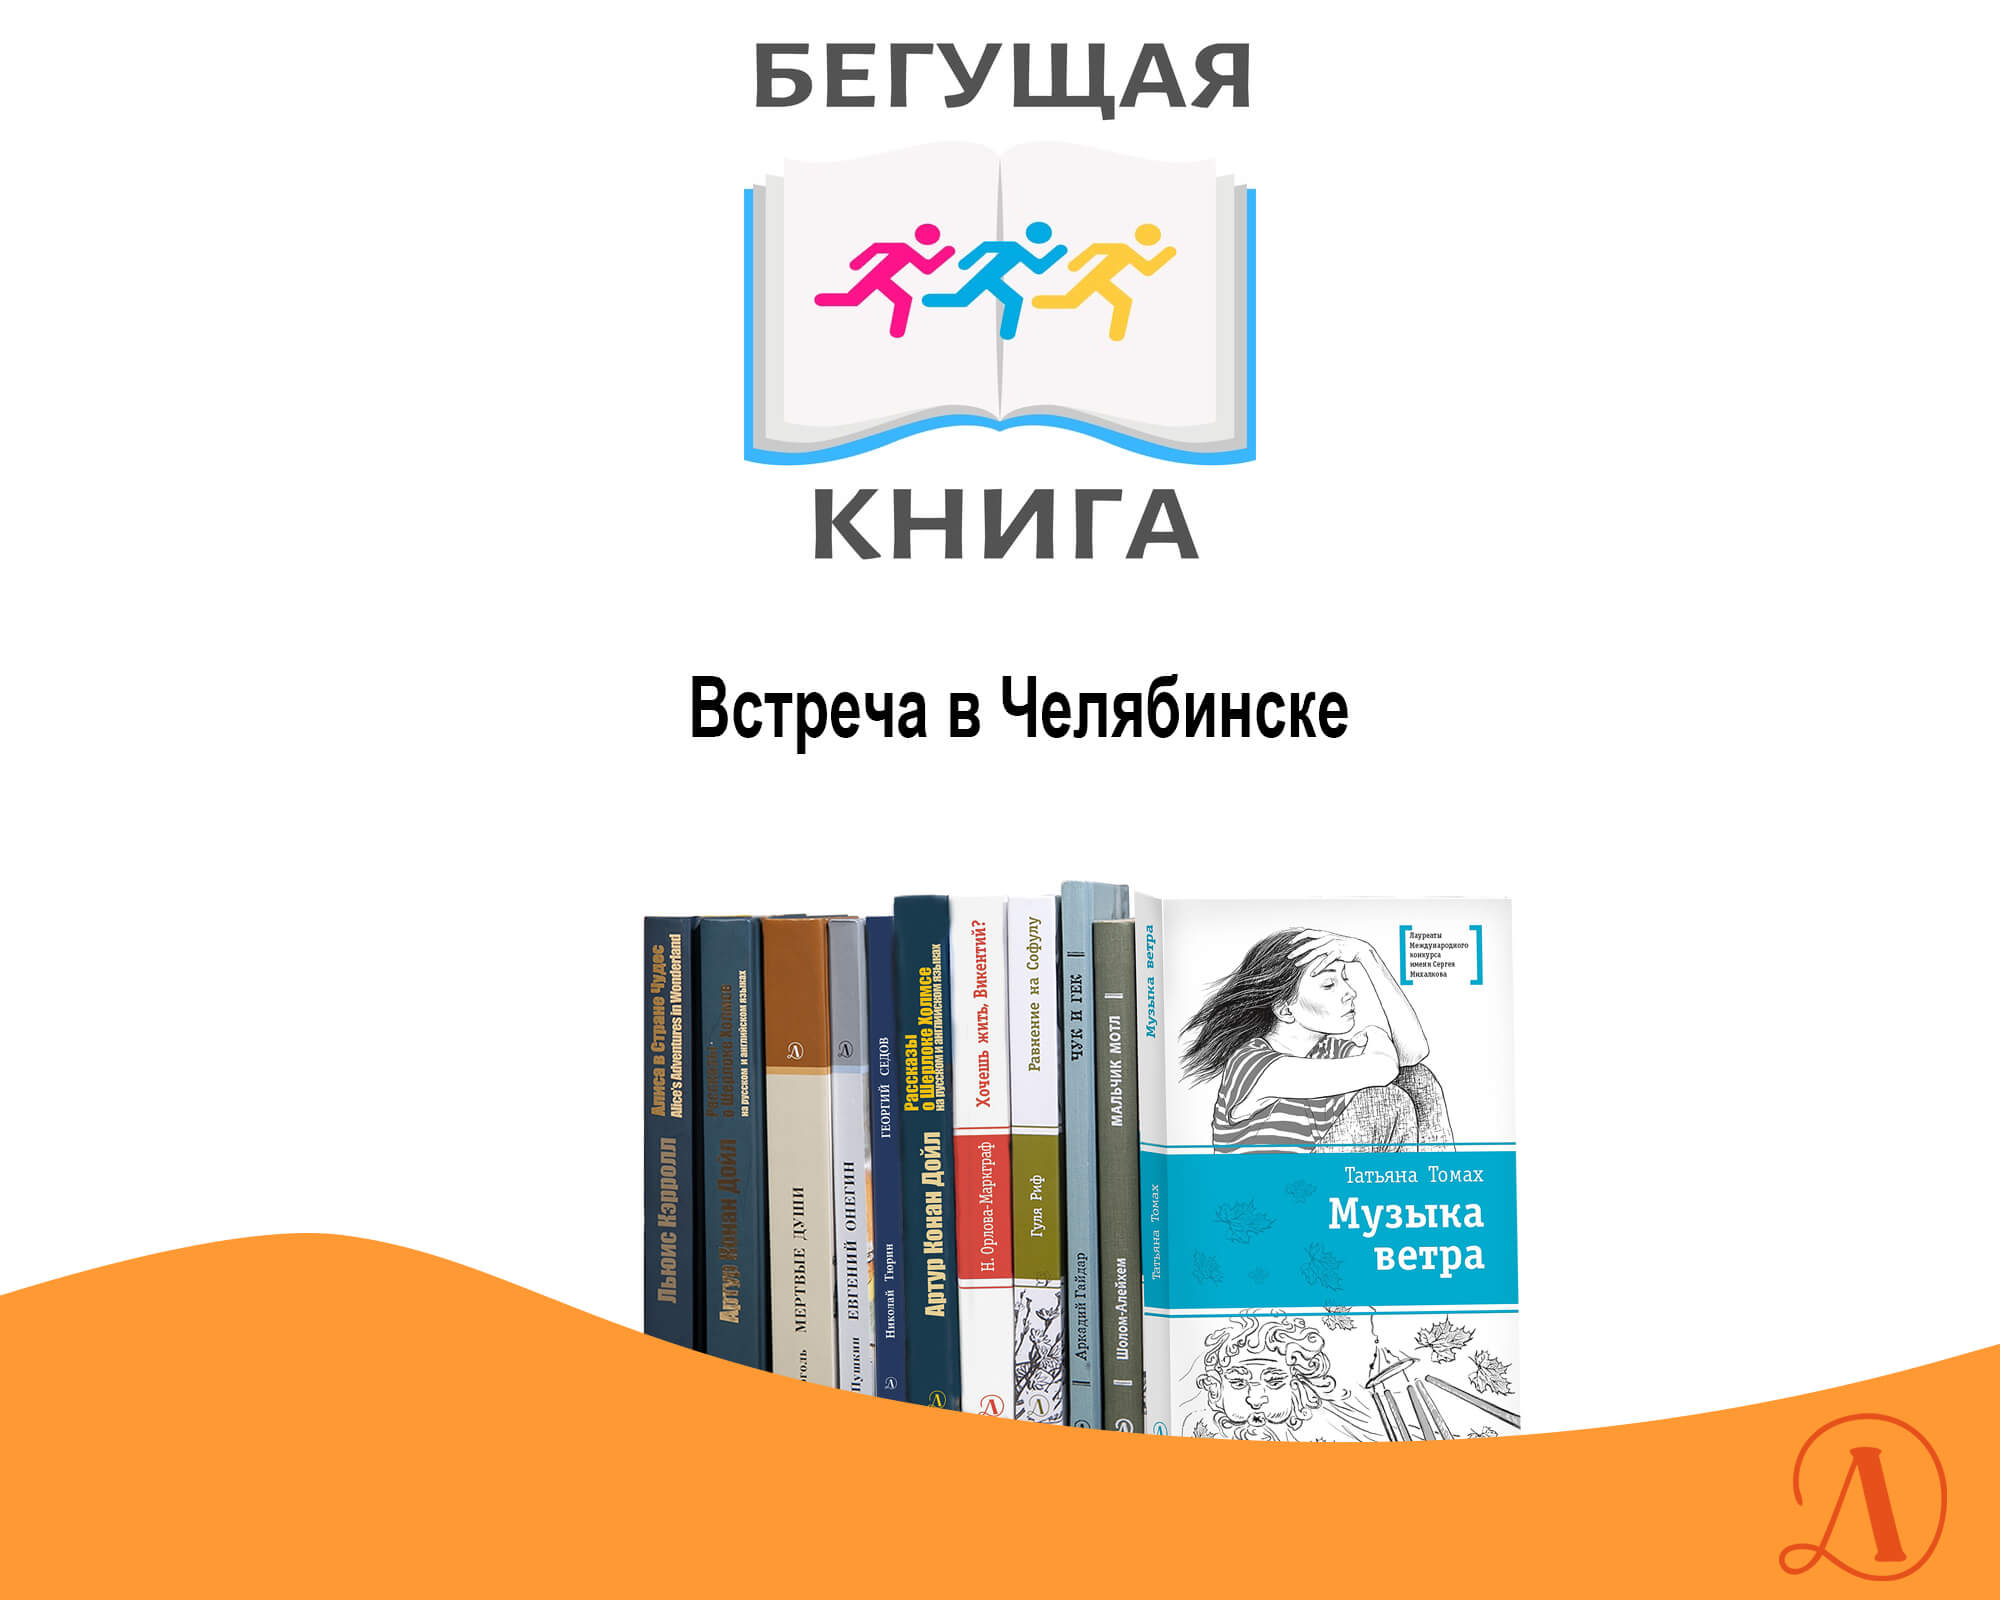 Статья: "Бегущая книга. Встреча в Челябинске" - Издательство «Детская литература»